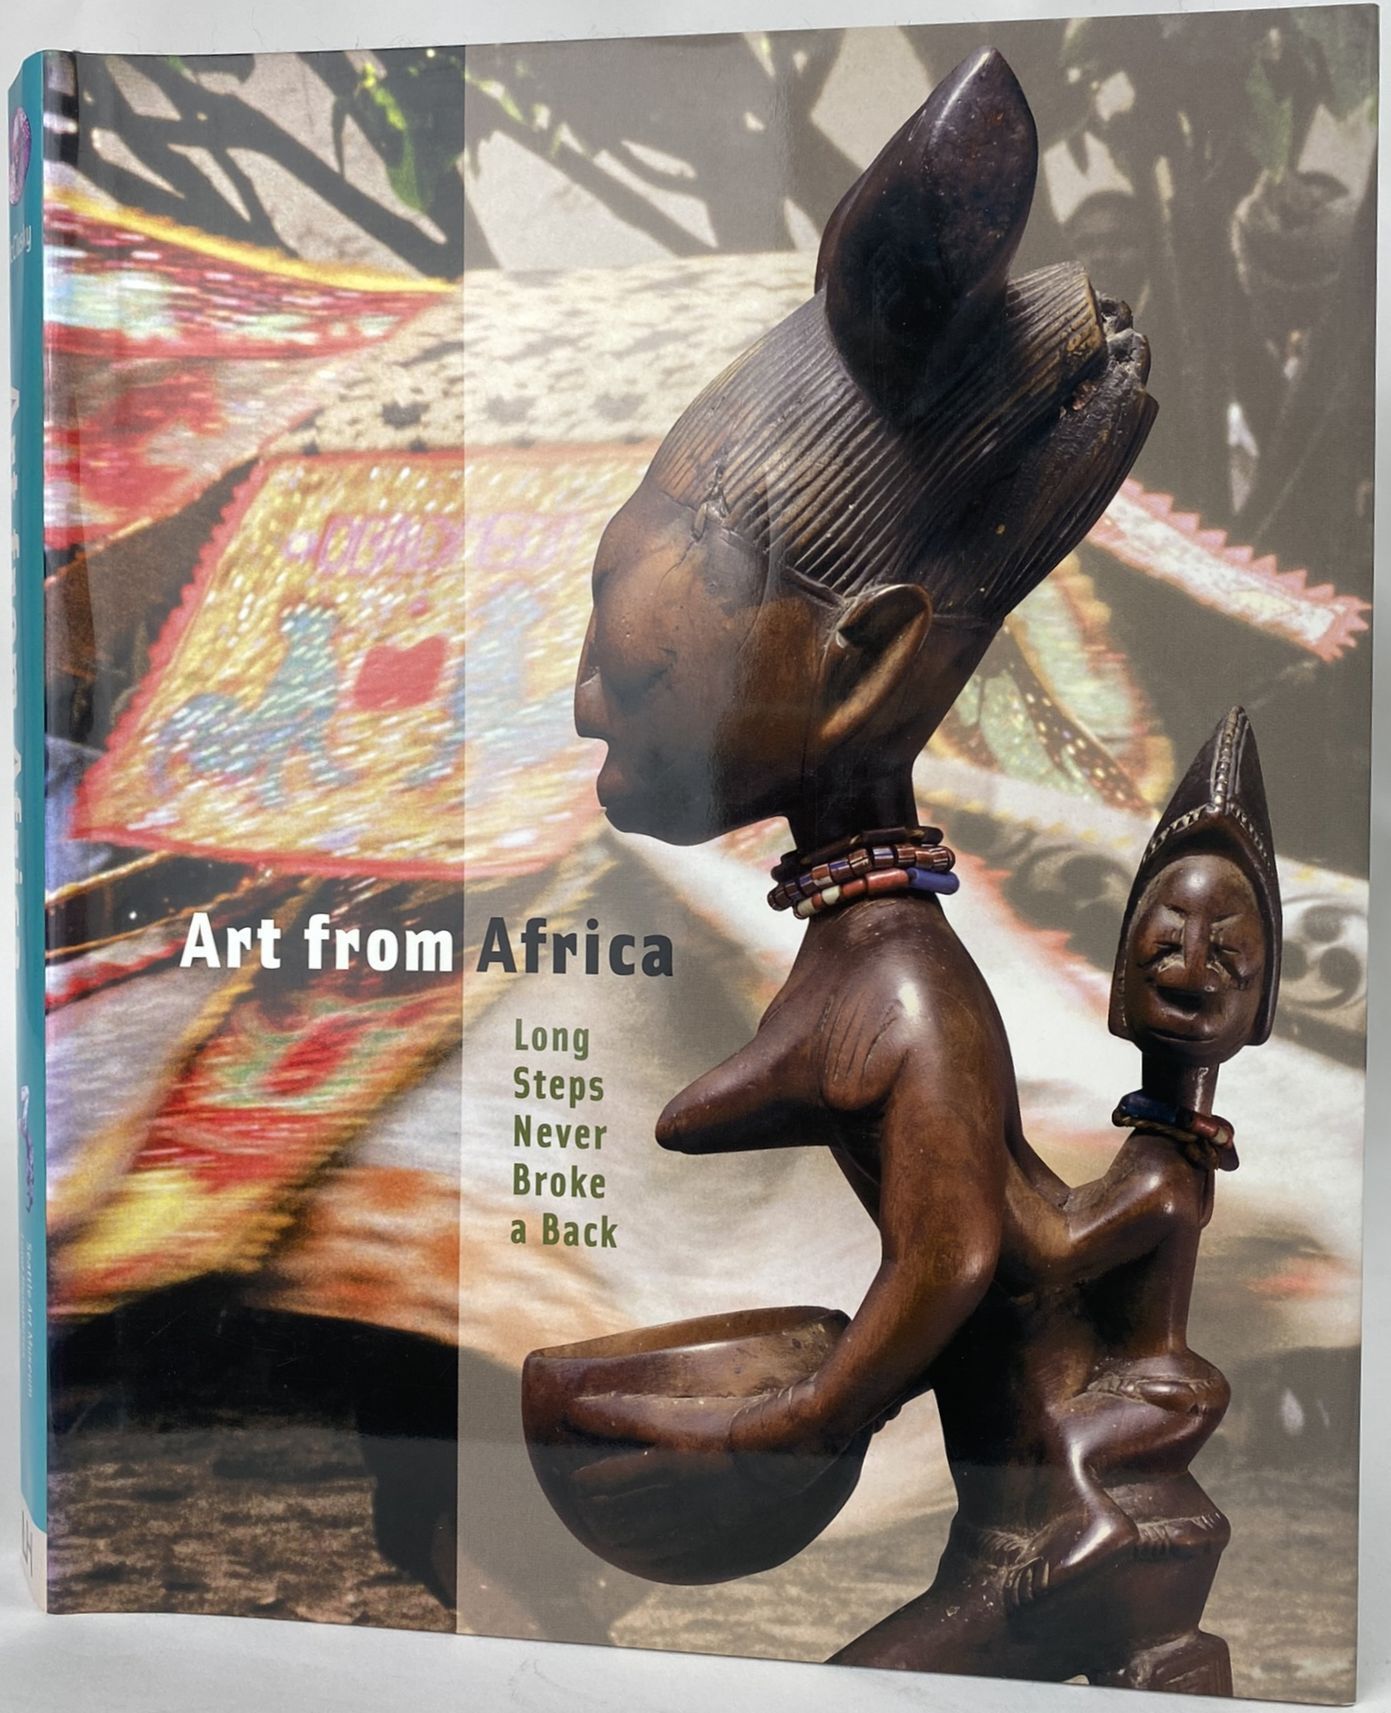 Null 麦克卢斯基-帕梅拉和汤普森-罗伯特-法里斯。

来自非洲的艺术--万里长征不折腰，西雅图艺术博物馆和Lund Humphries 2002年，紫色布装&hellip;